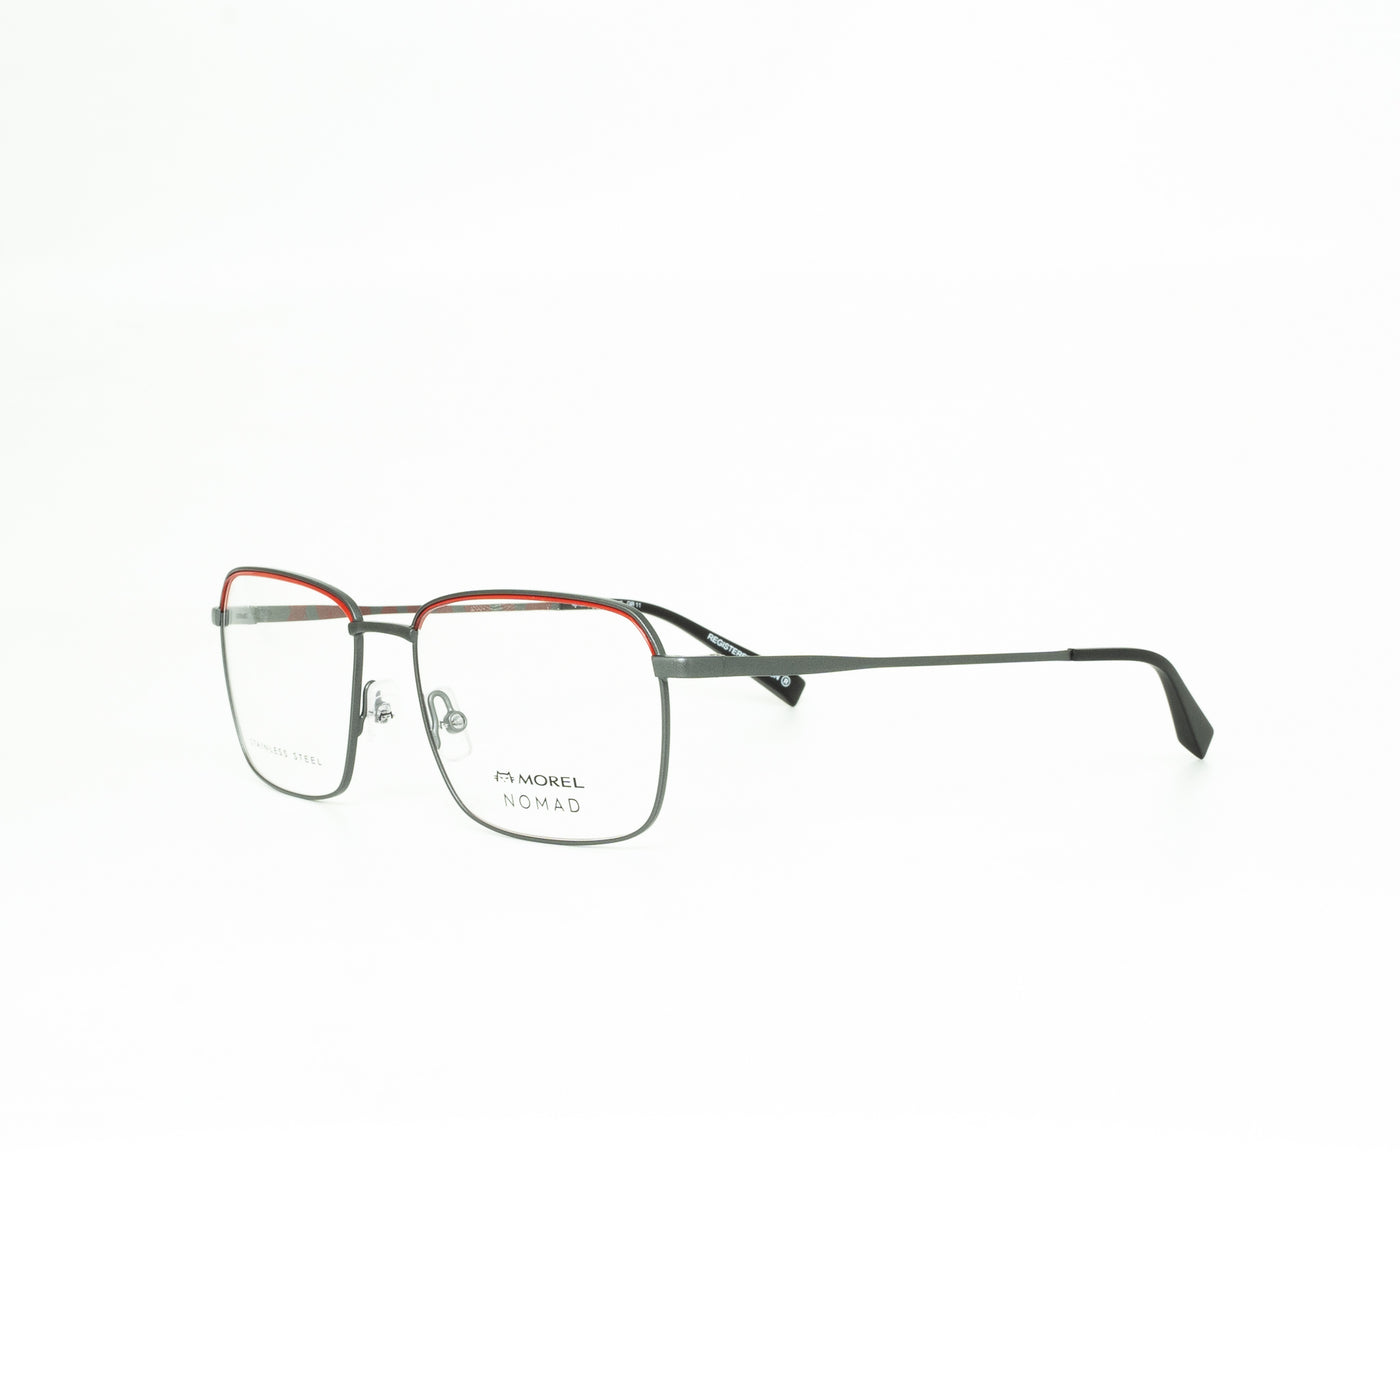 Oga OGA40133NGR1155 | Eyeglasses - Vision Express Optical Philippines